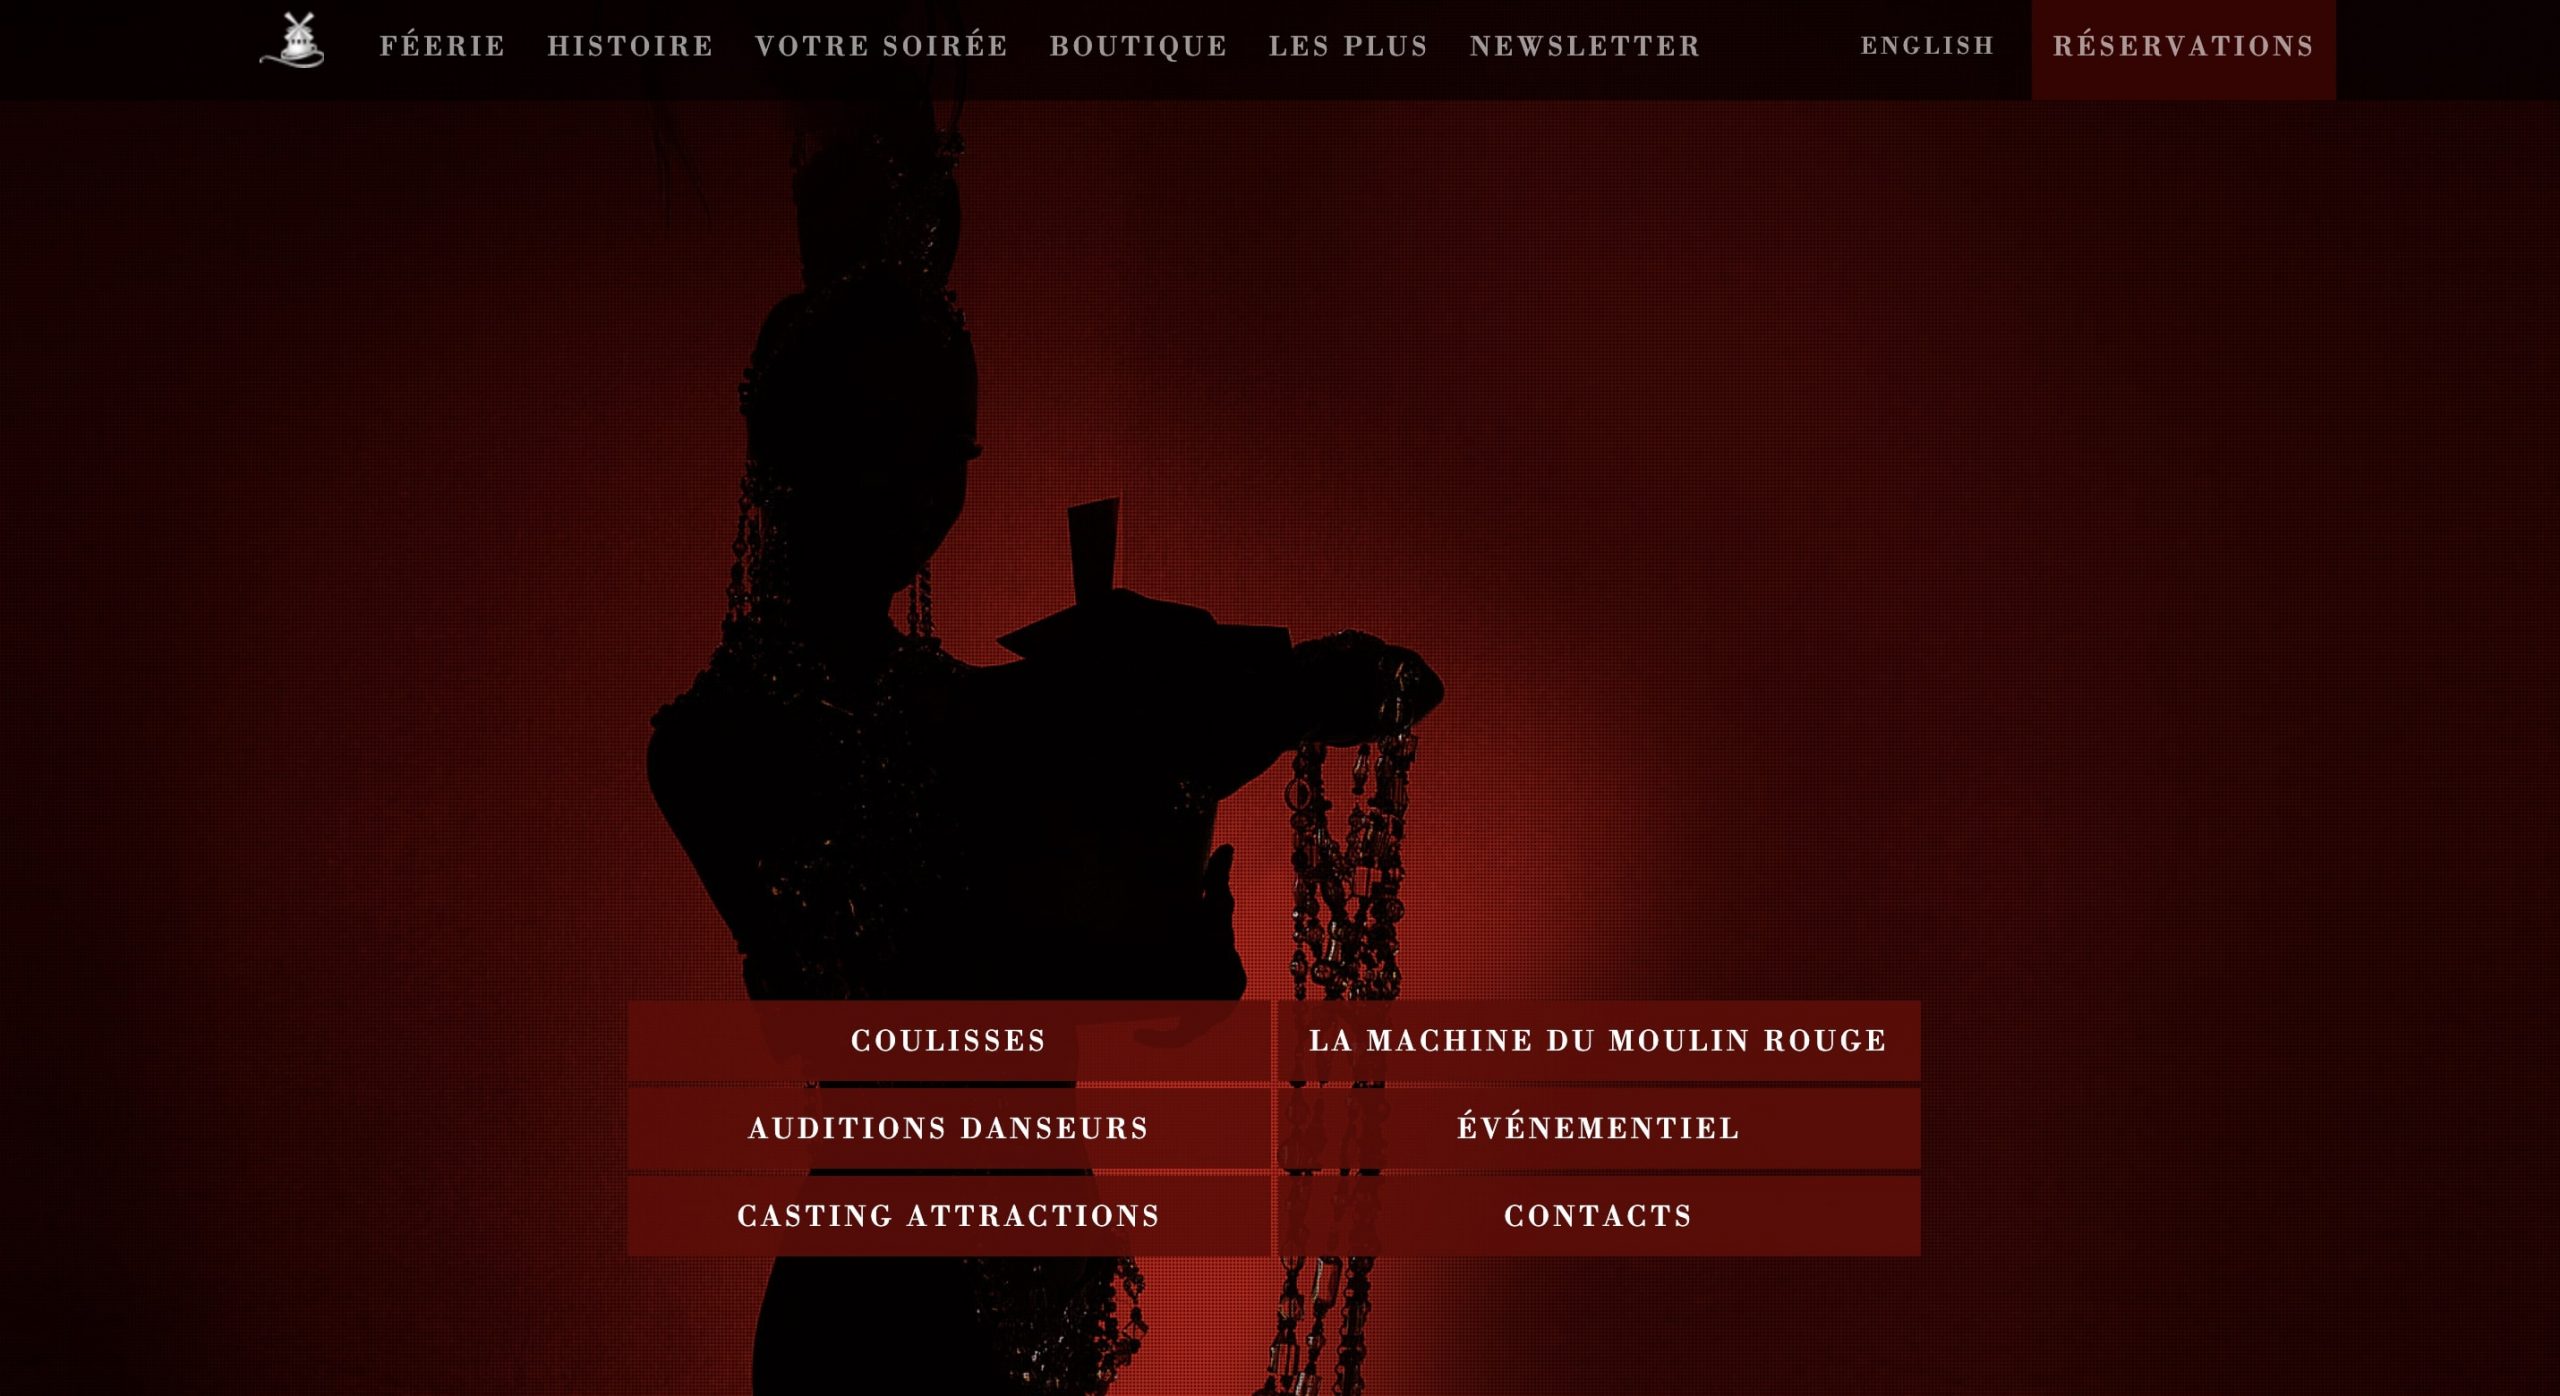 La signification des couleurs : le rouge : capture d'écran de landing page du Moulin Rouge